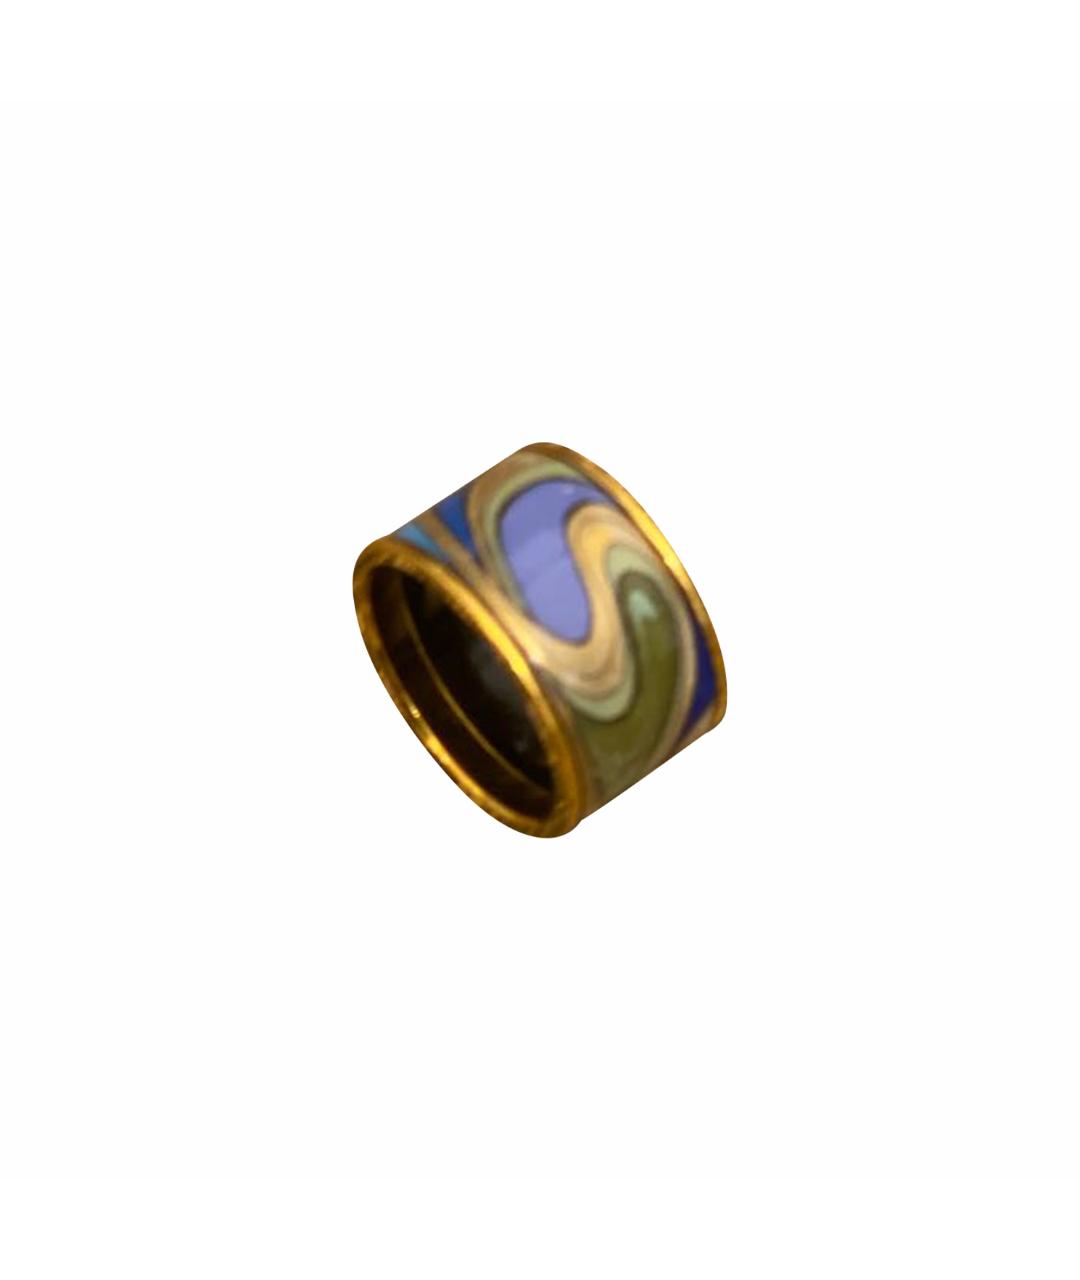 Frey Wille Синее позолоченное кольцо, фото 1